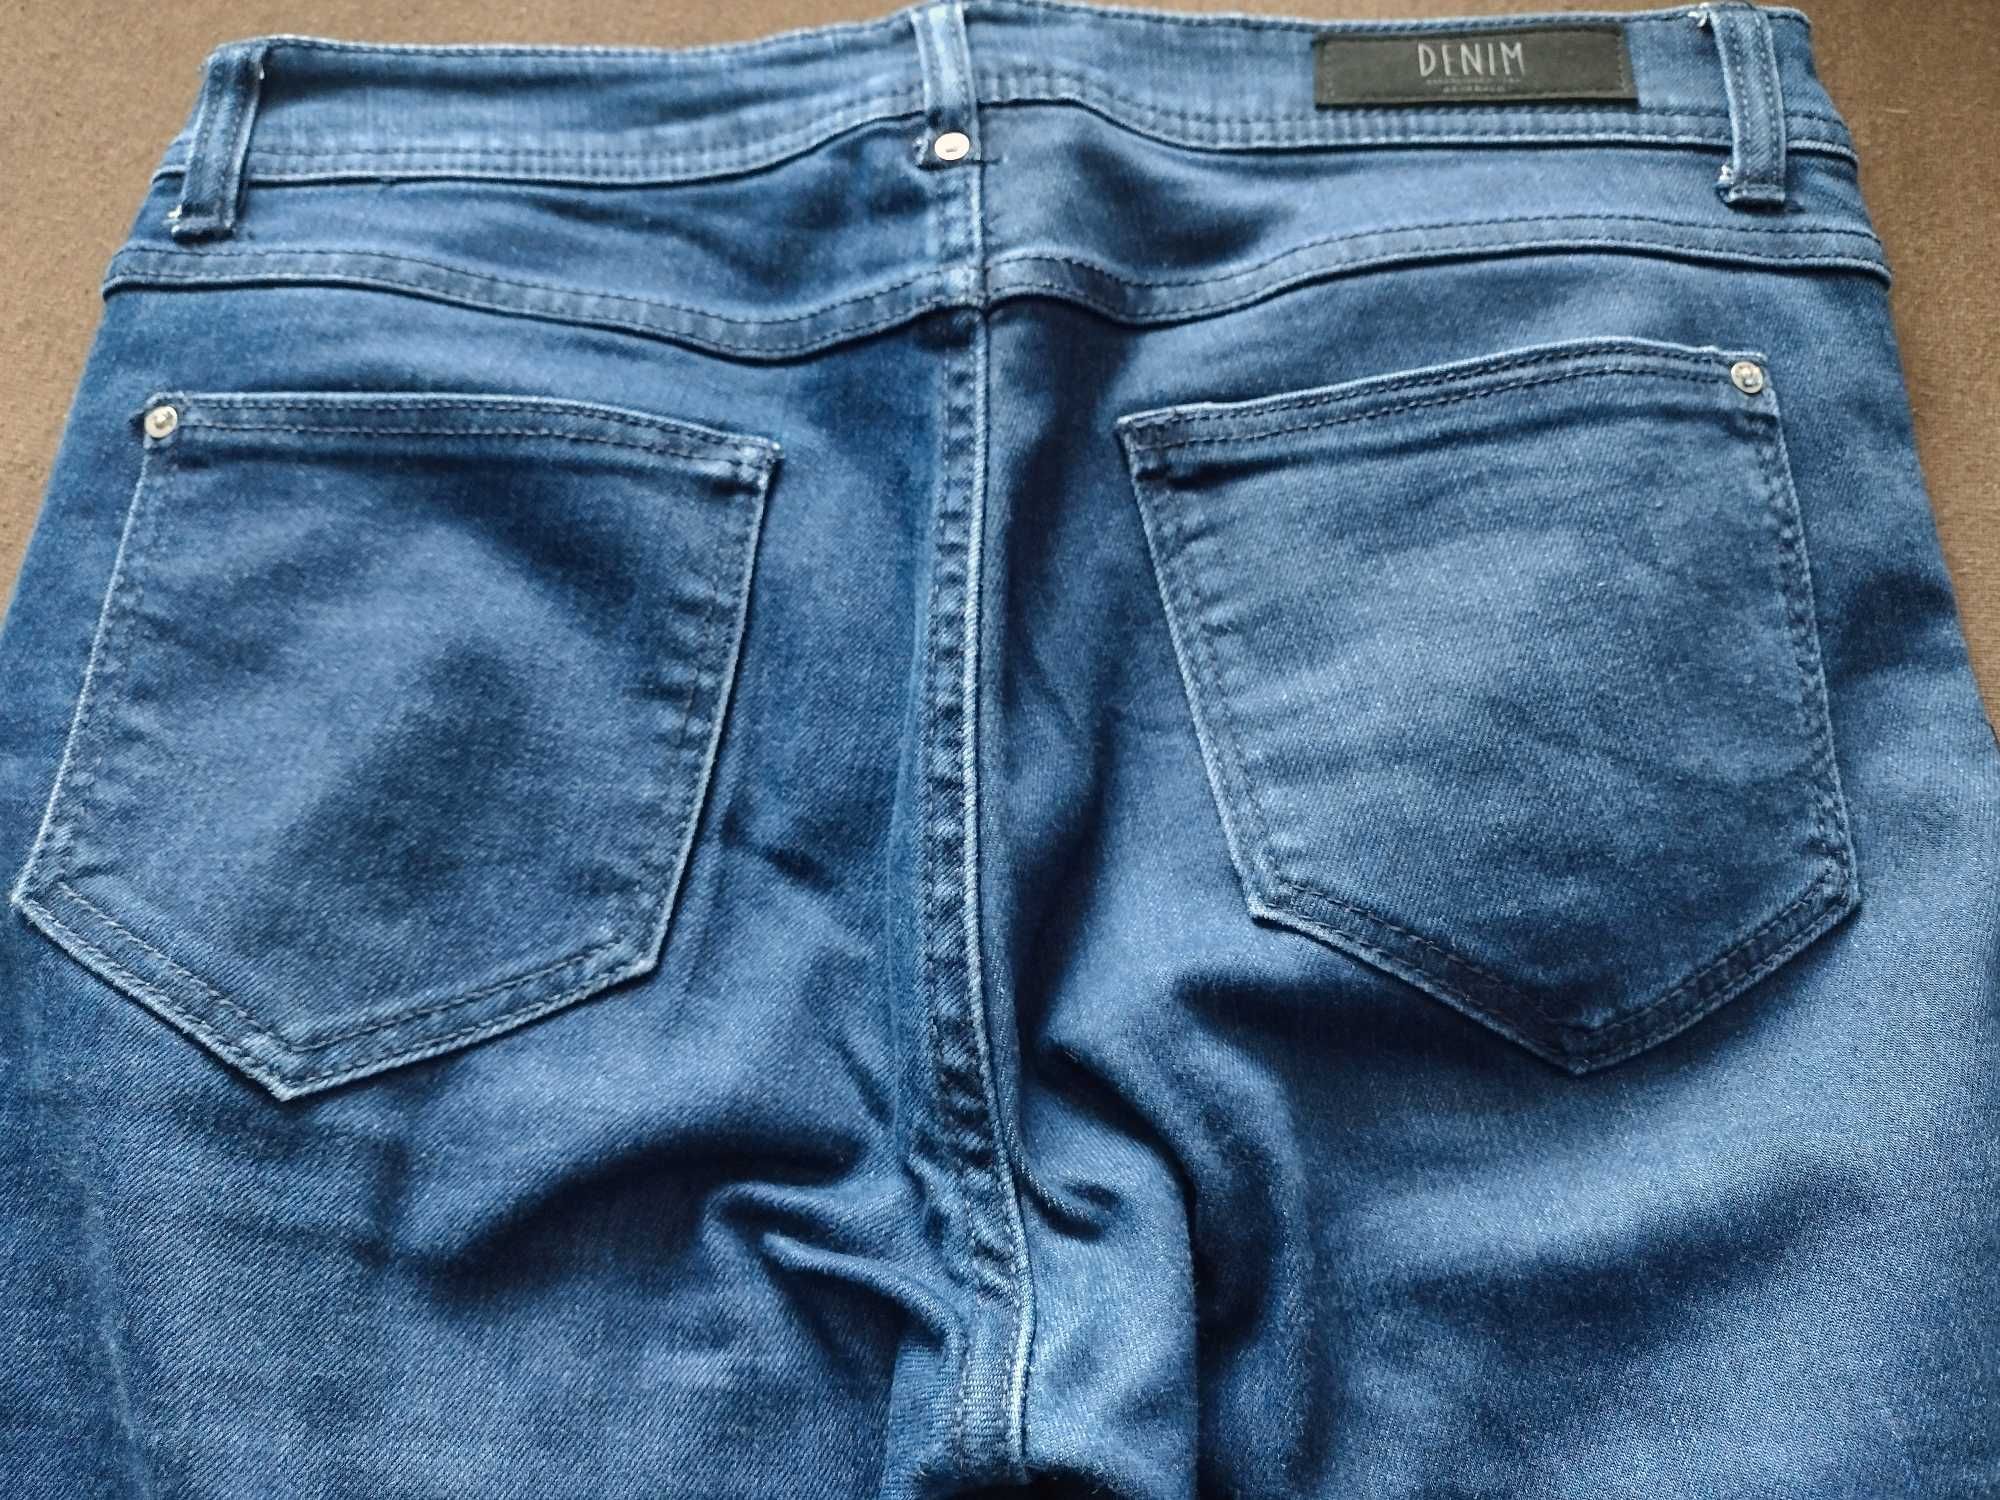 Spodnie jeansowe RESERVED damskie r. 38 - jak nowe